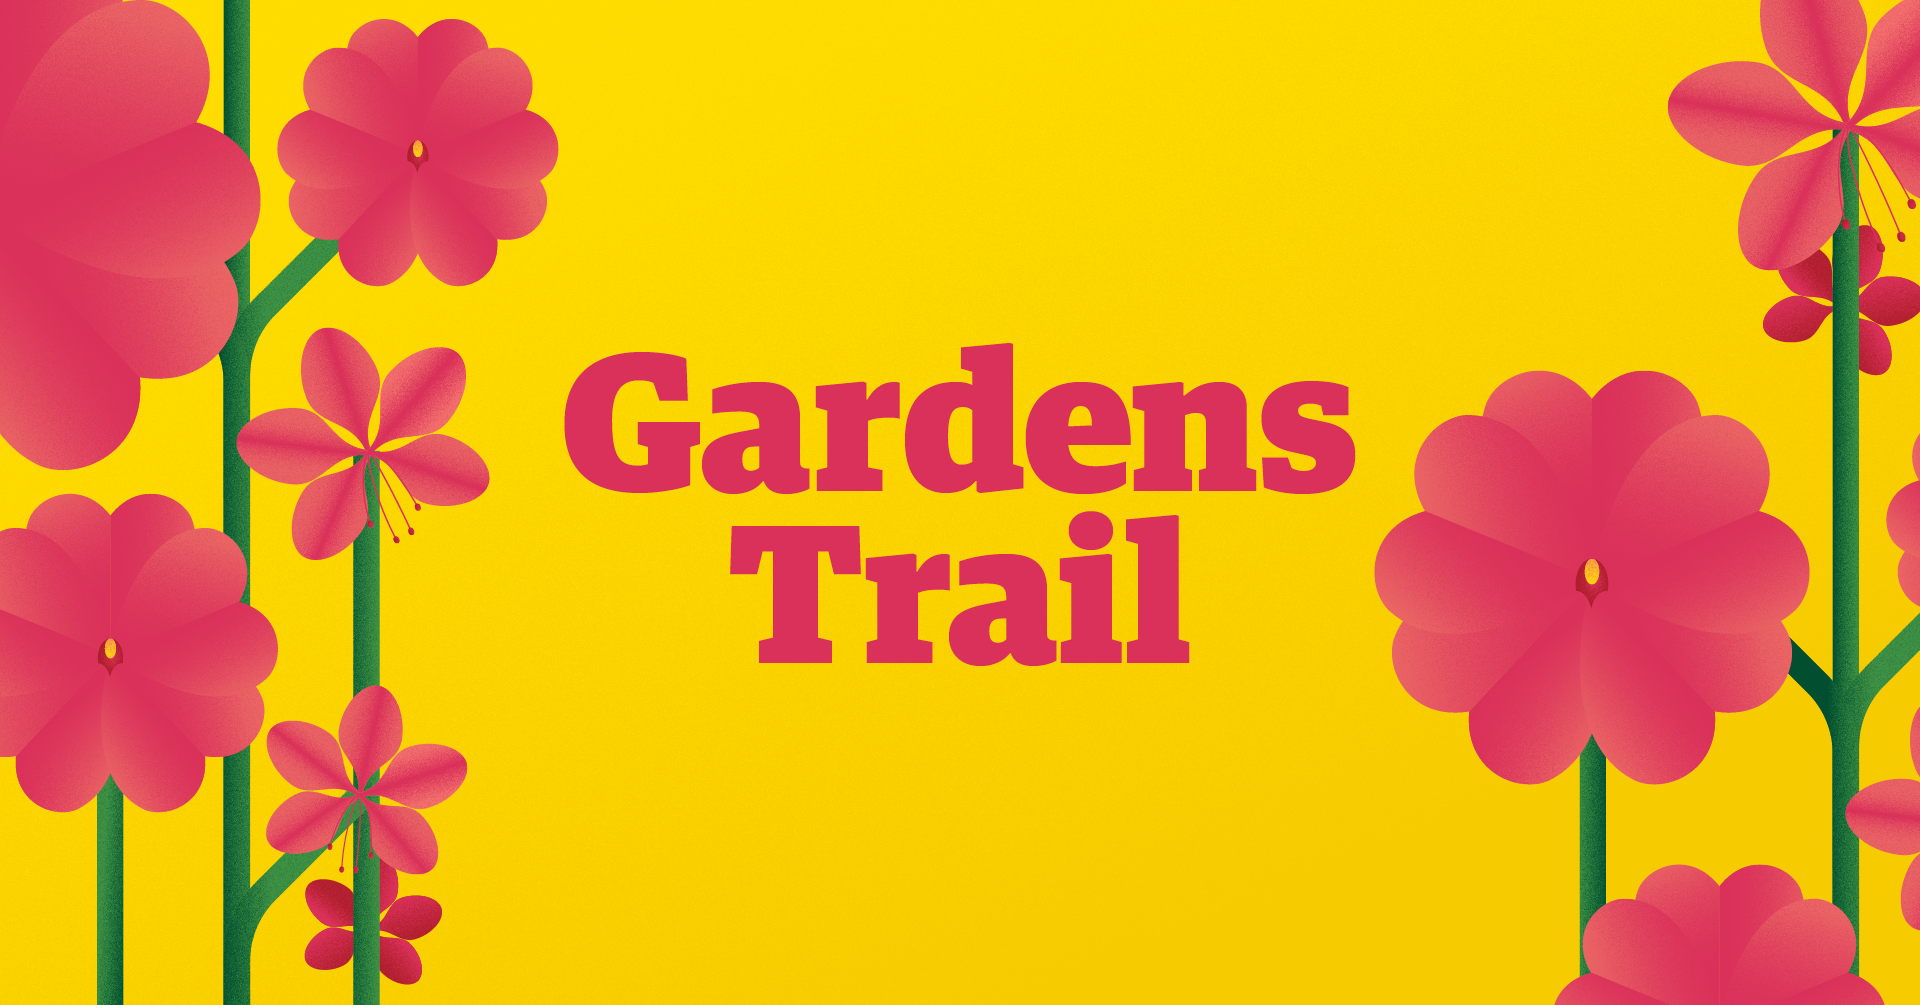 Gardens Trail